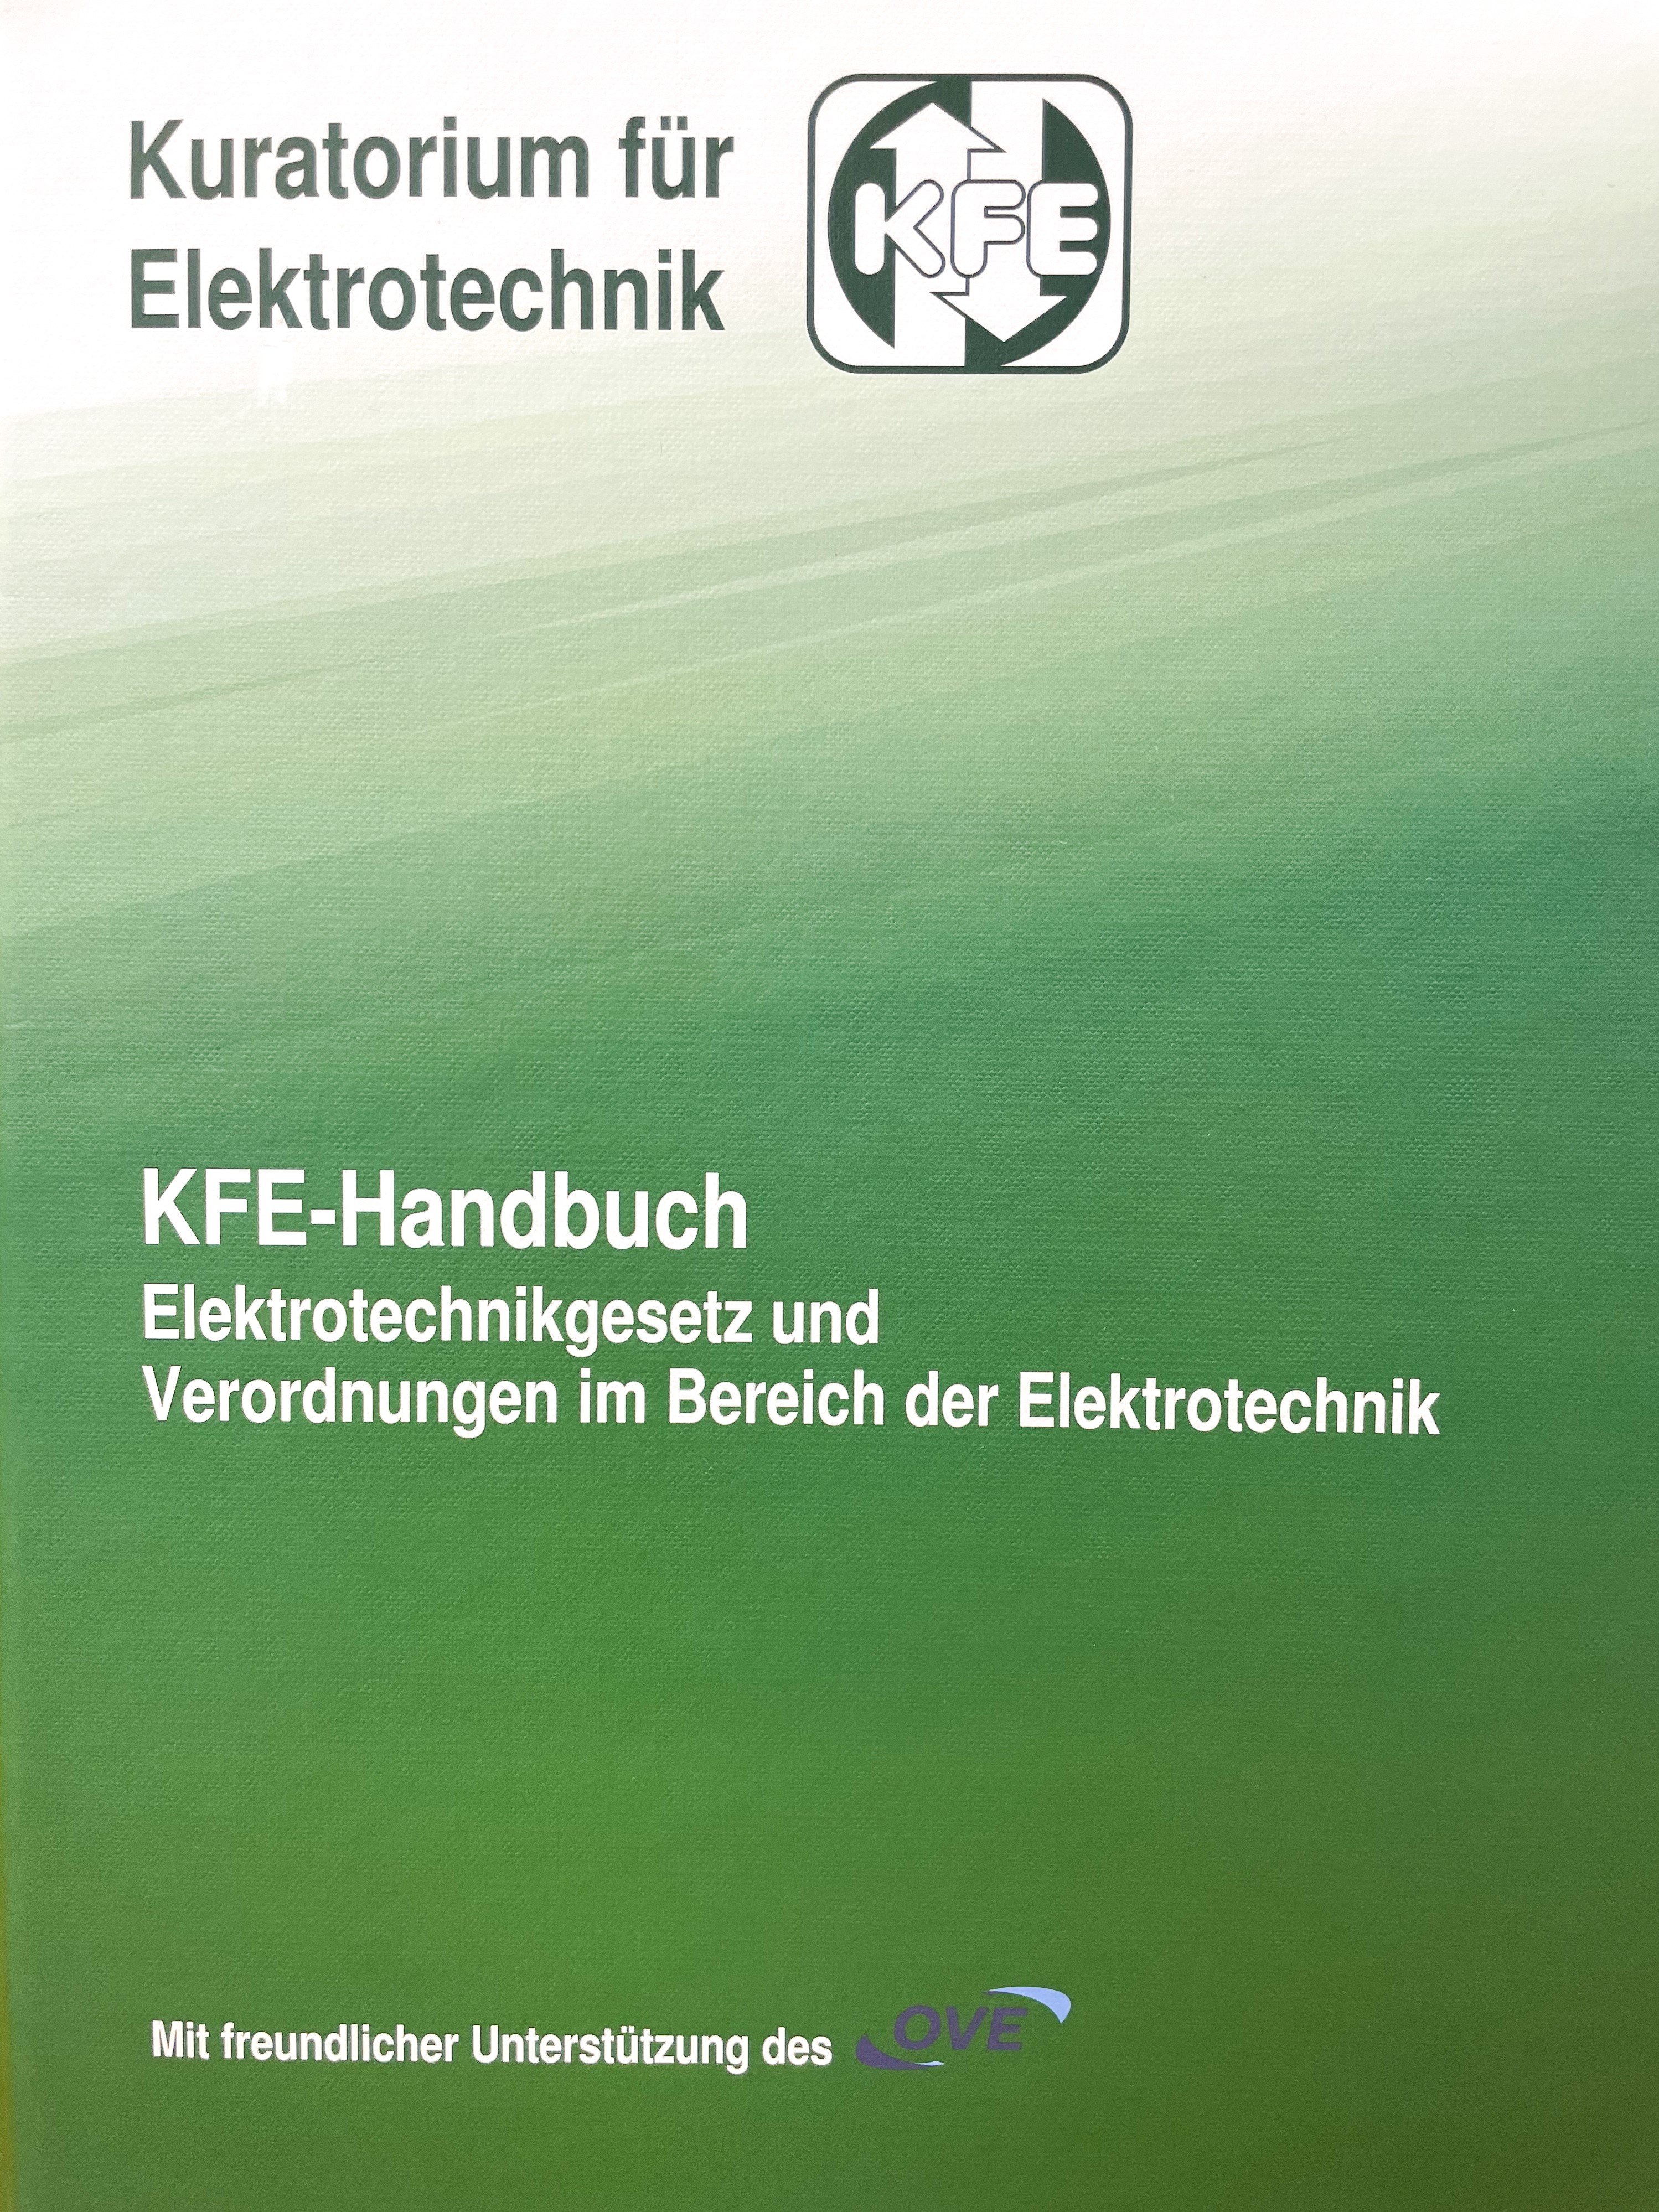 KFE-Handbuch - Elektrotechnikgesetz und Verordnungen im Bereich der Elektrotechnik